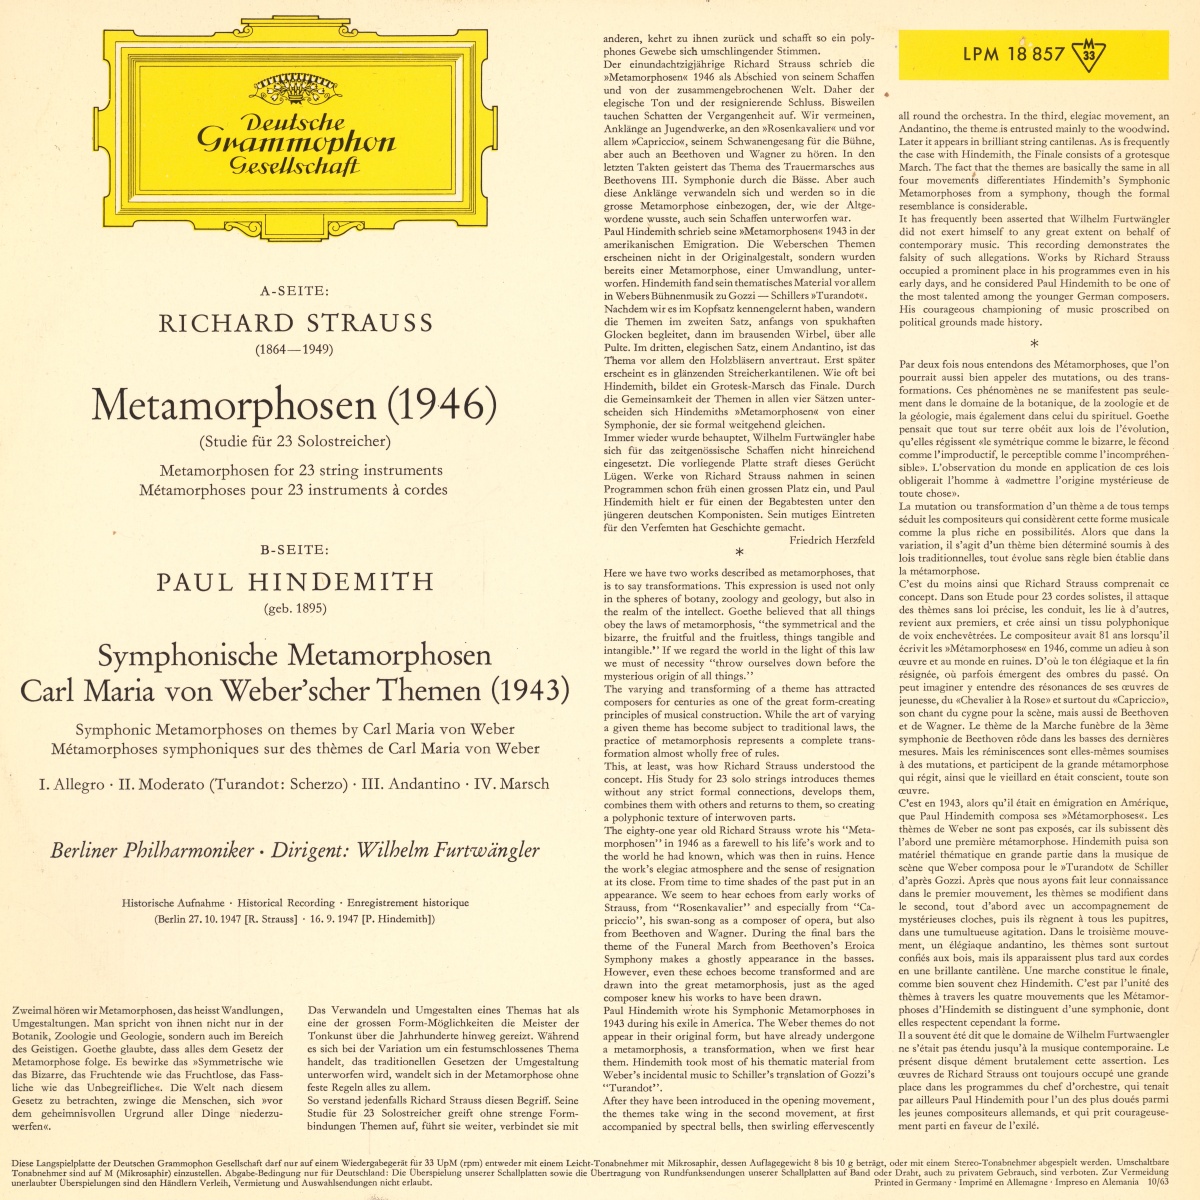 Verso de la pochette du disque Deutsche Grammophon LPM 18 857